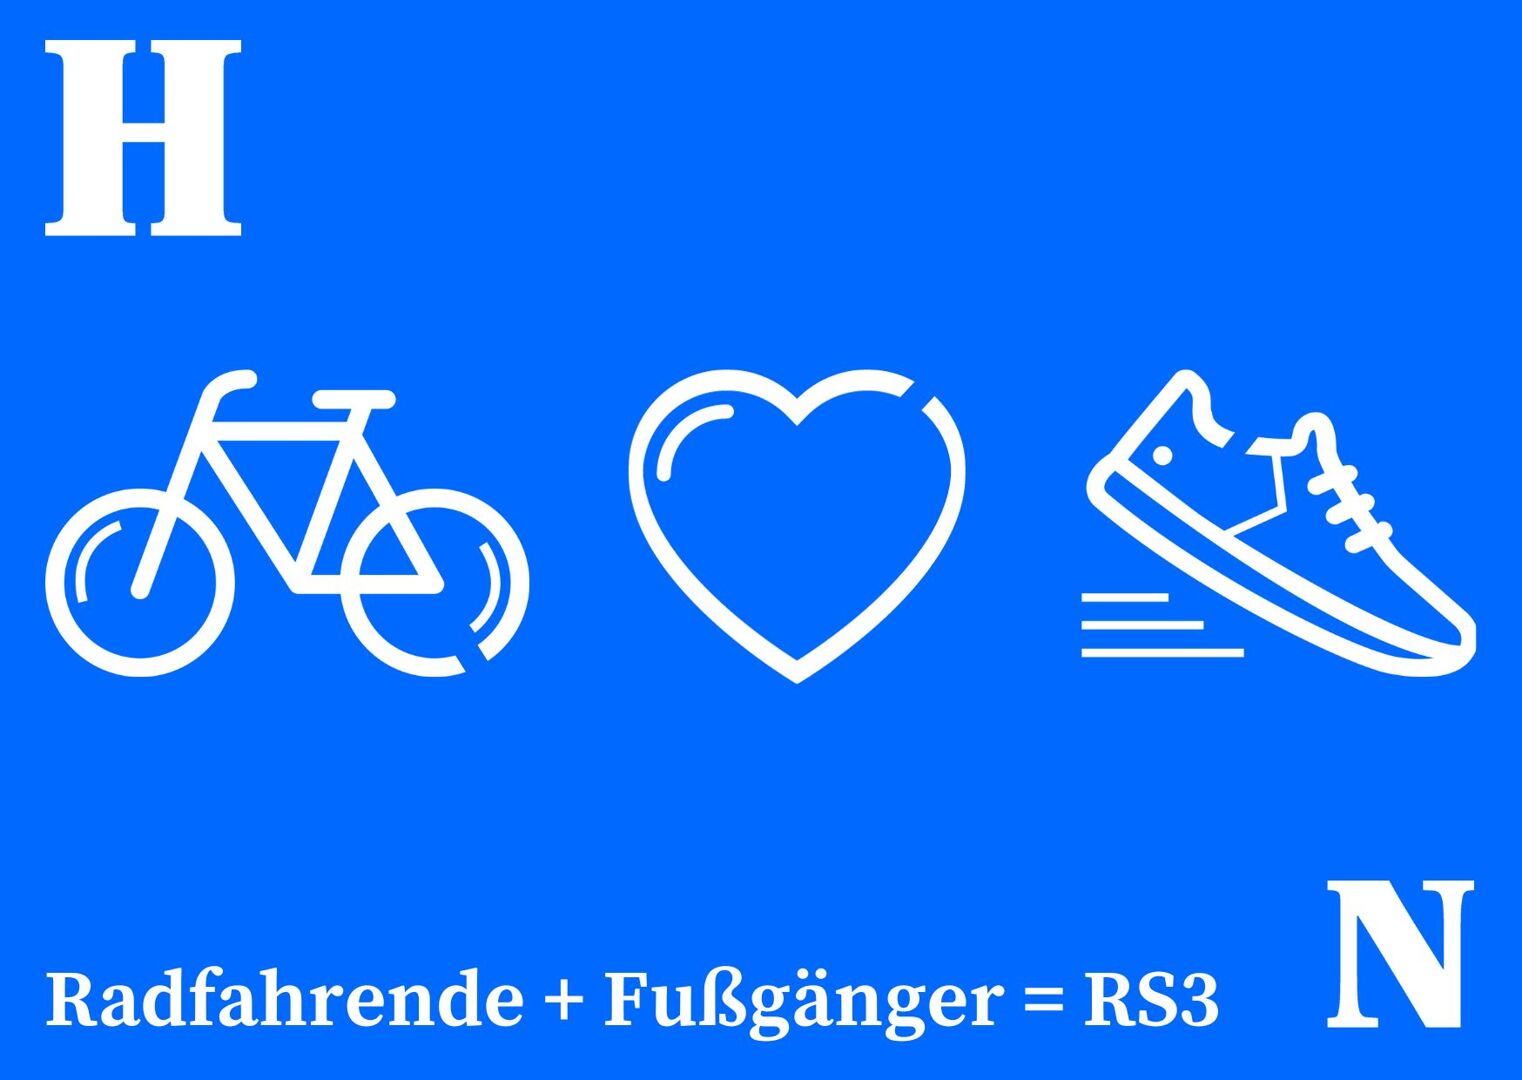 Auf blauem Hintergrund sind weiße Piktogramme abgebildet: Fahrrad, Herz und Laufschuh. Darunter steht in weißer Schrift Radfahrende + Fußgänger = RS3